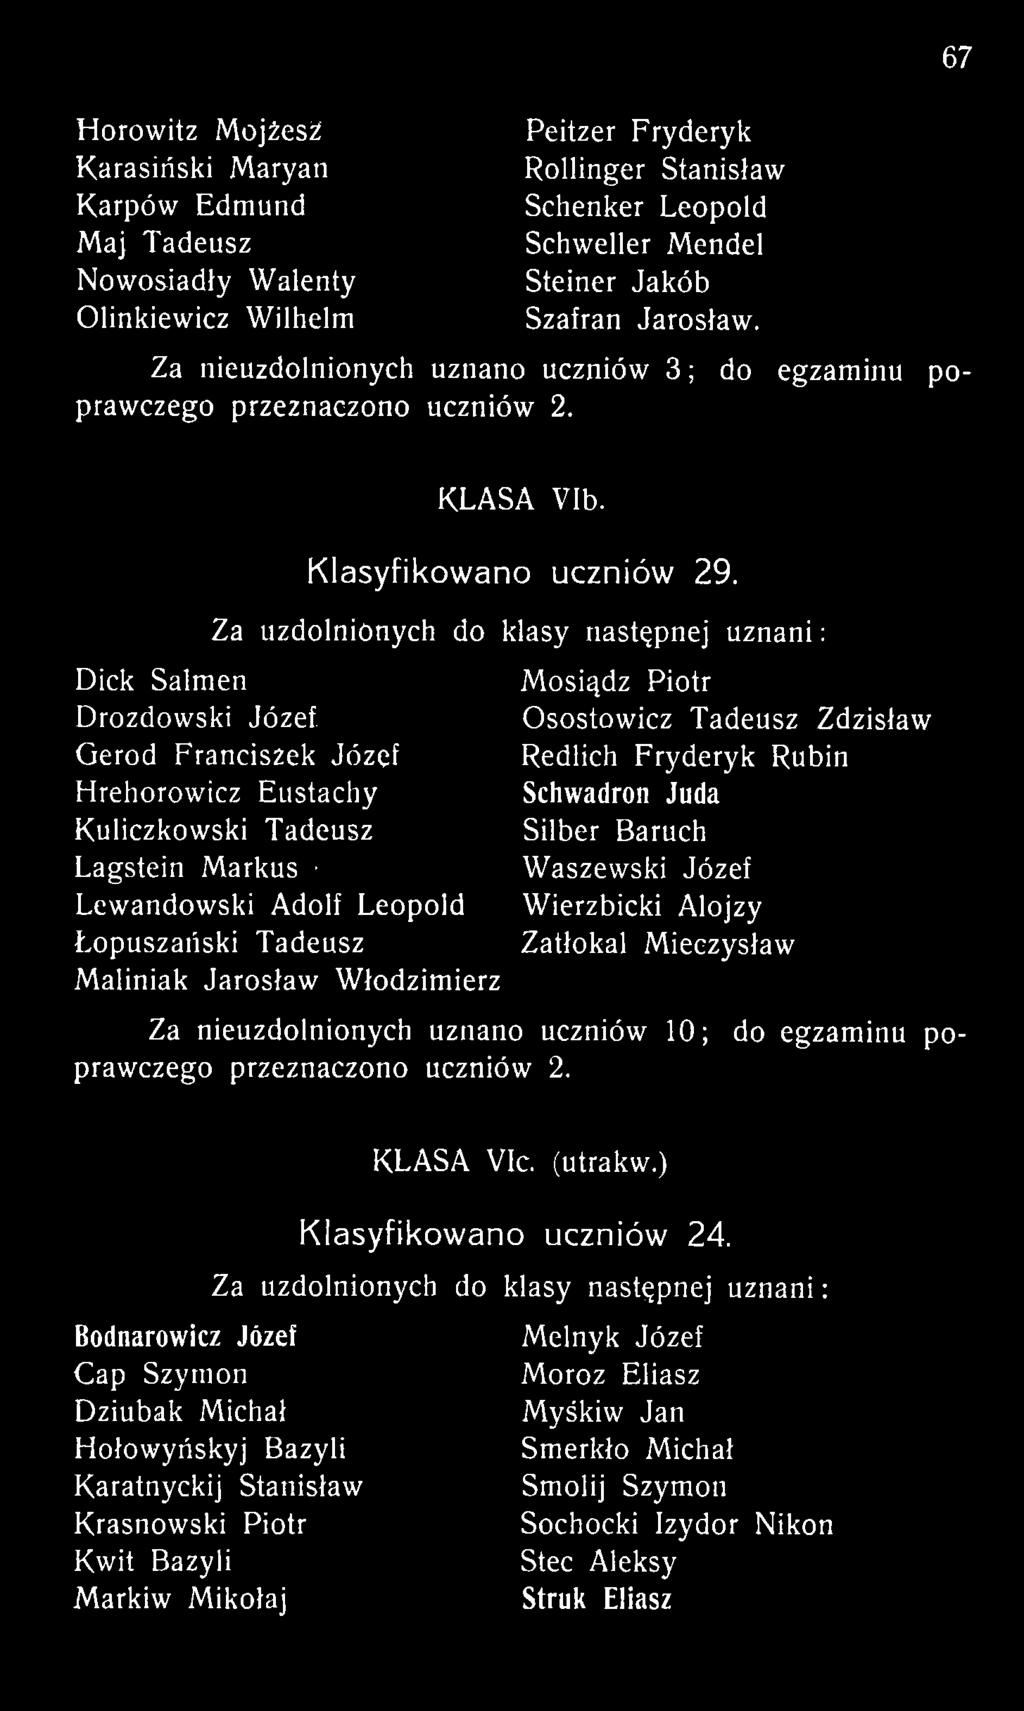 Mieczysław Za nieuzdolnionych uznano uczniów 10; do egzaminu poprawczego przeznaczono uczniów 2. KLASA VIc. (utrakw.) Klasyfikowano uczniów 24.